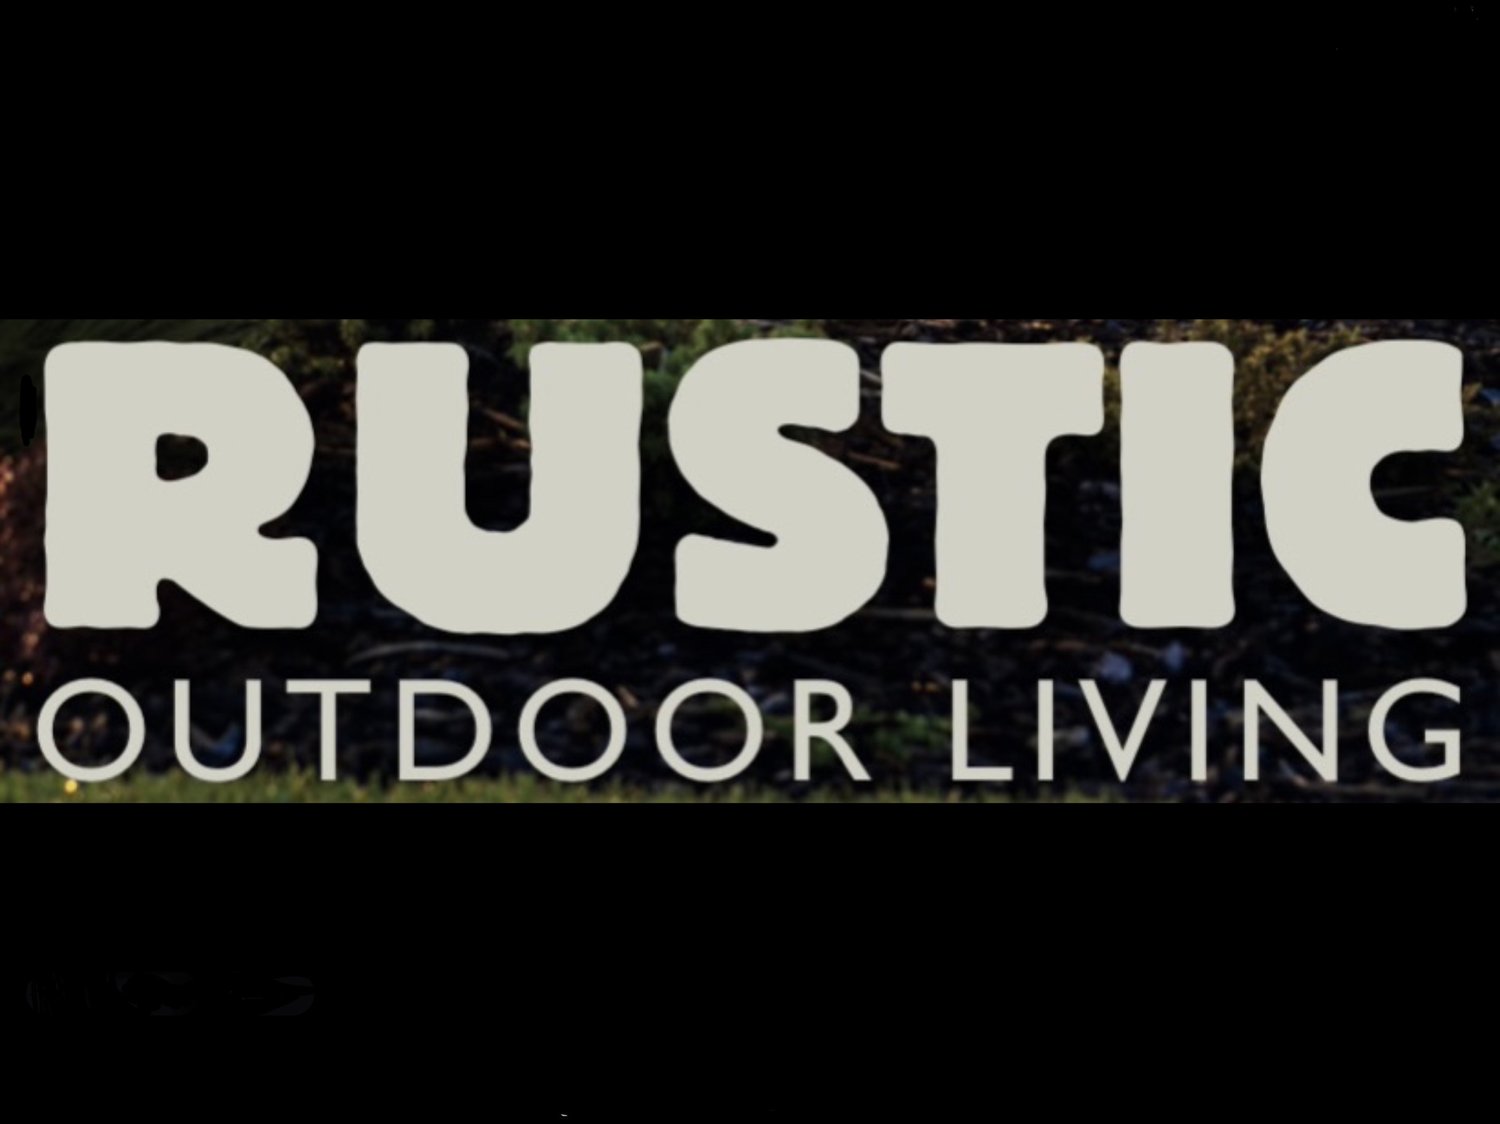 Rustic Outdoor Living